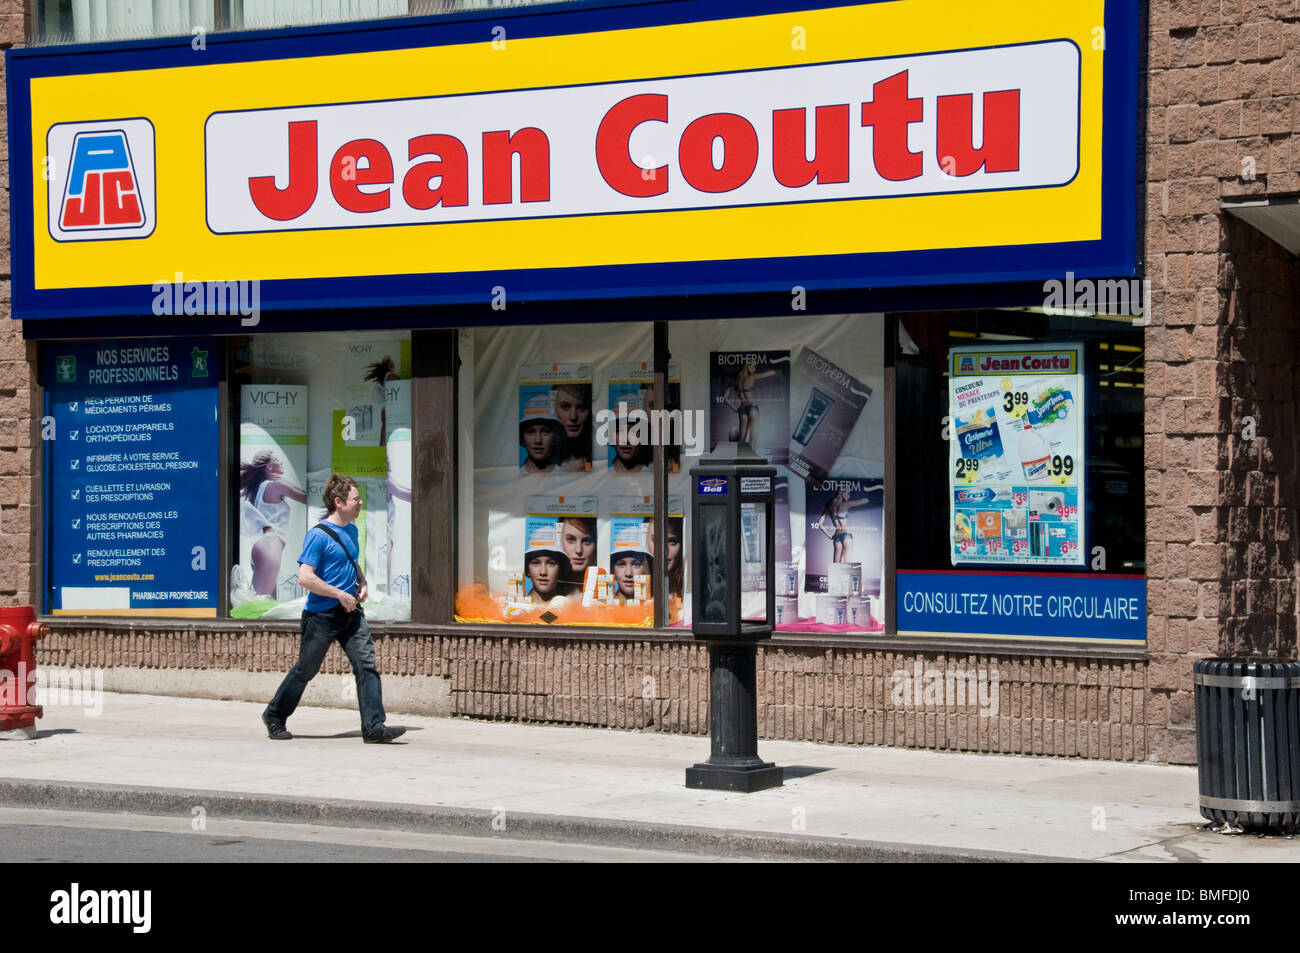 https://c8.alamy.com/compfr/bmfdj0/pharmacie-jean-coutu-sur-le-boulevard-saint-laurent-bmfdj0.jpg